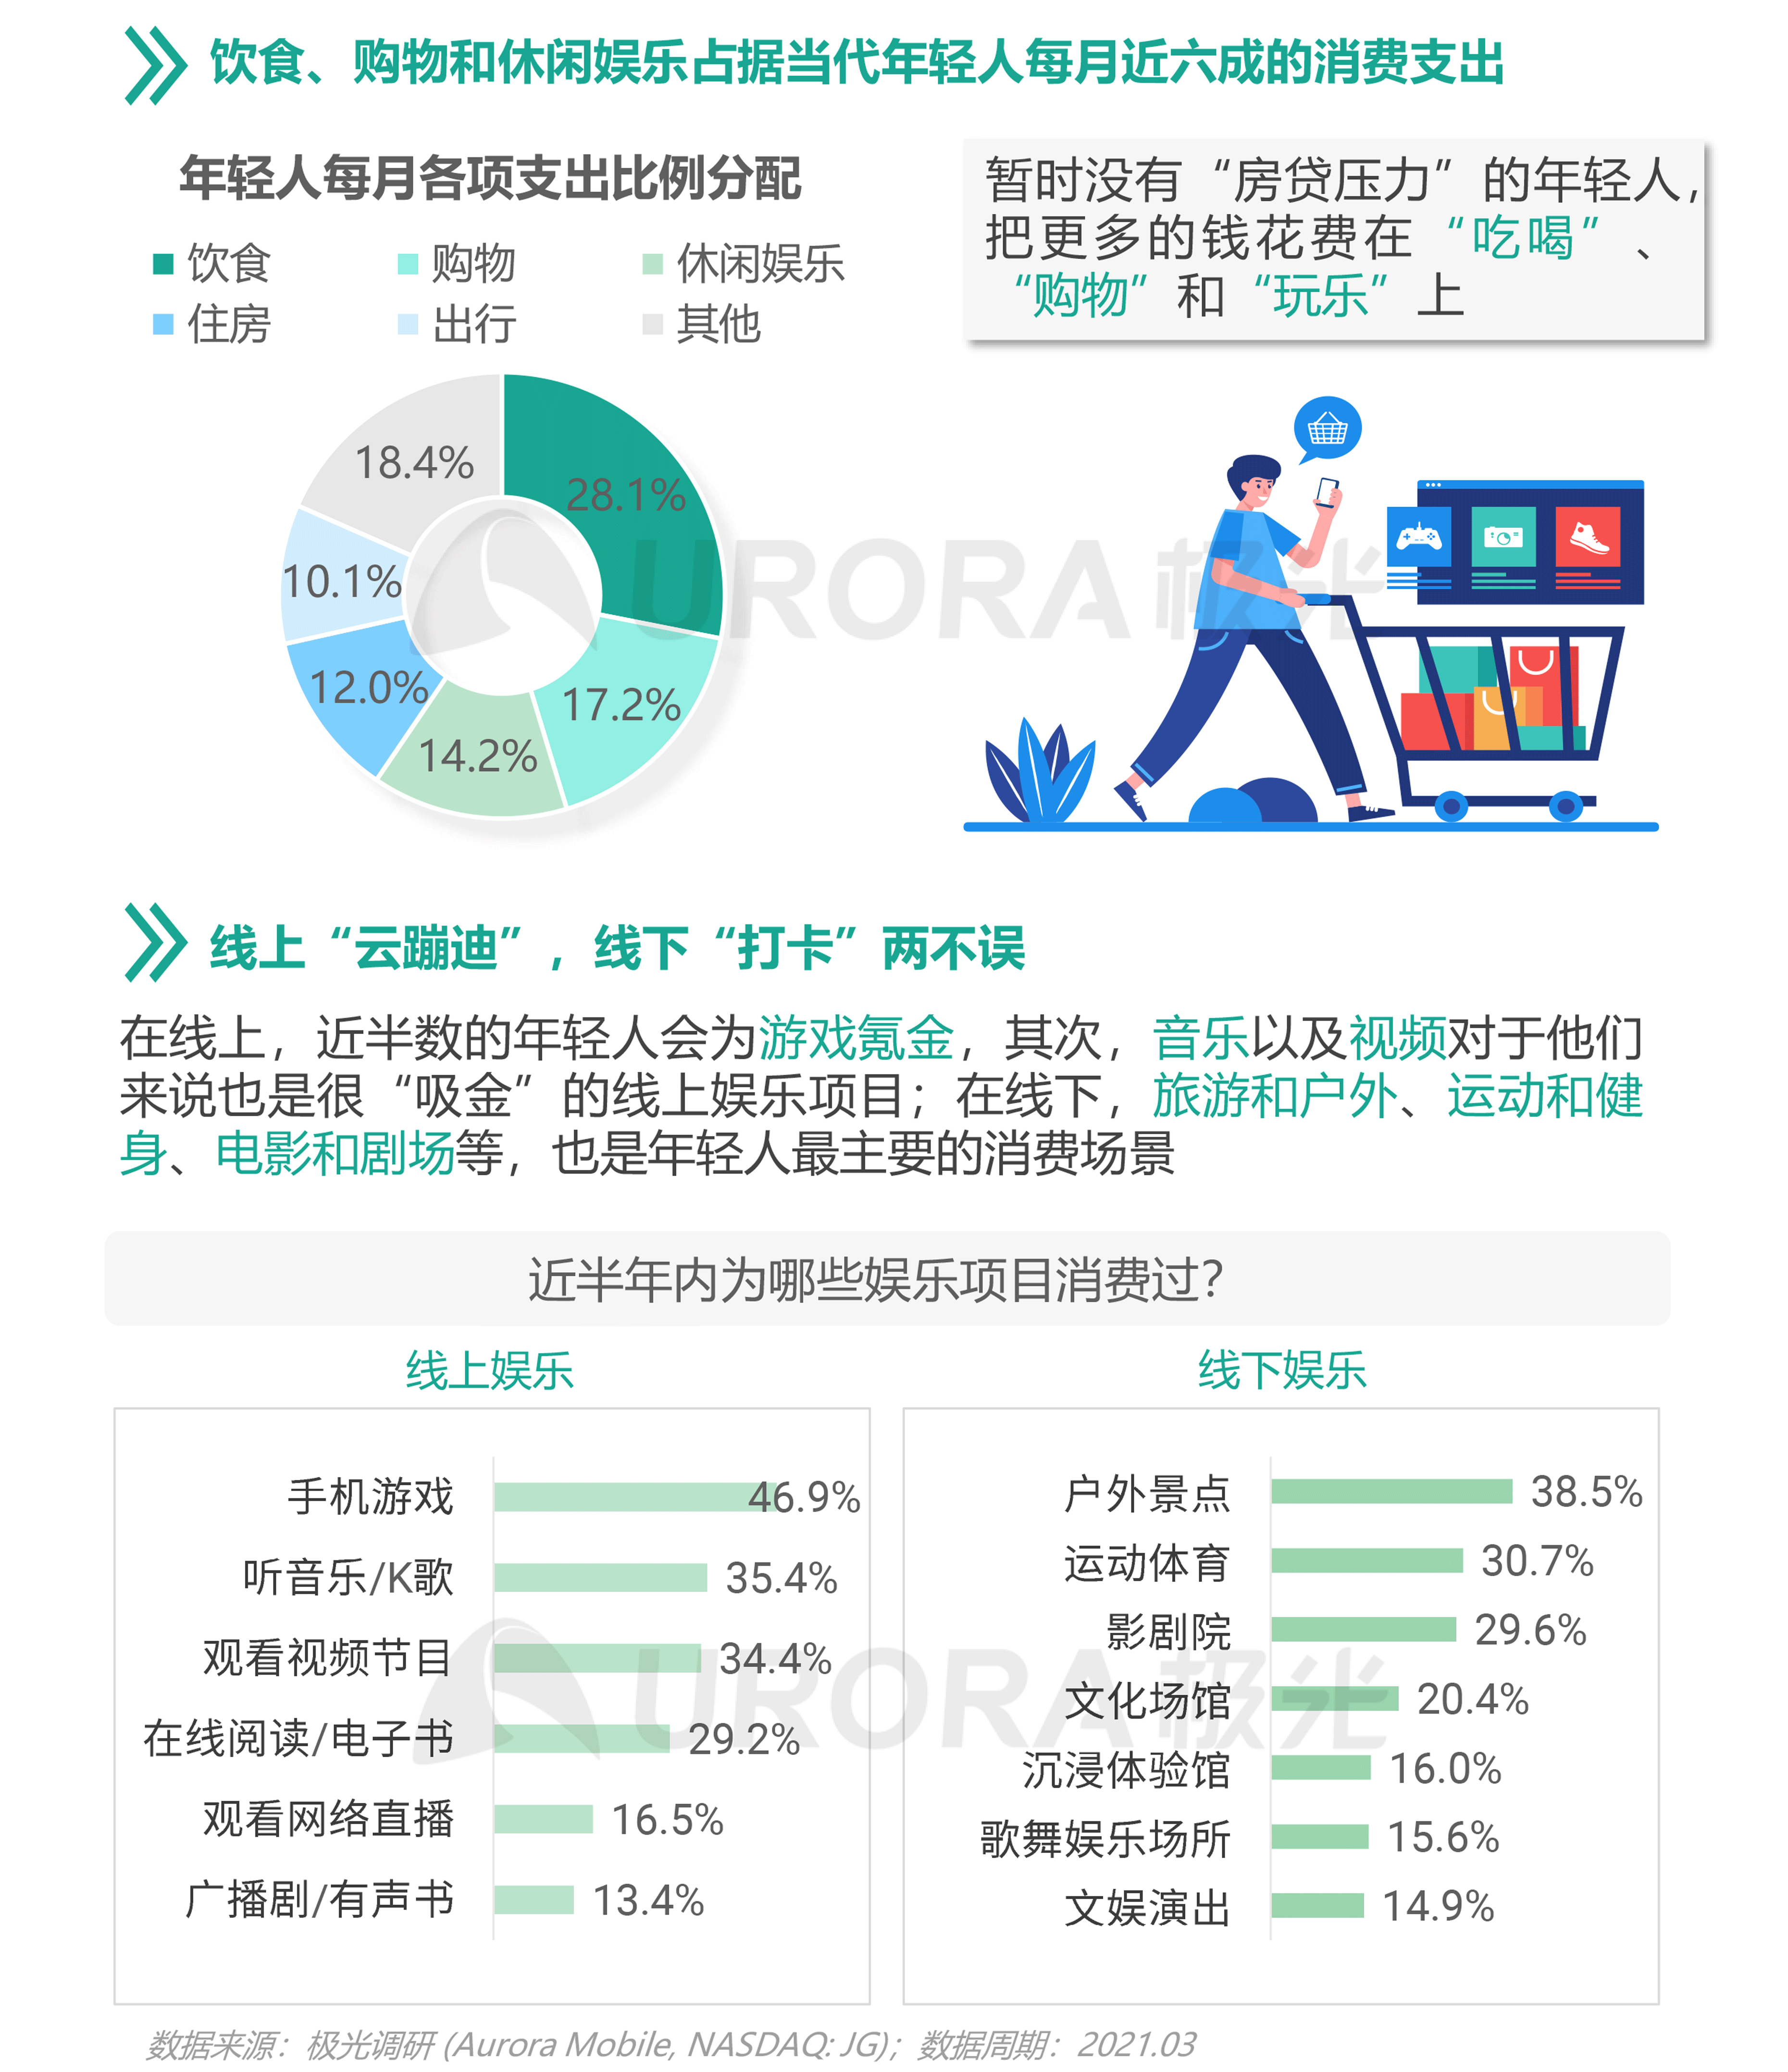 2021年轻人营销趋势研究报告【定稿】-22.png